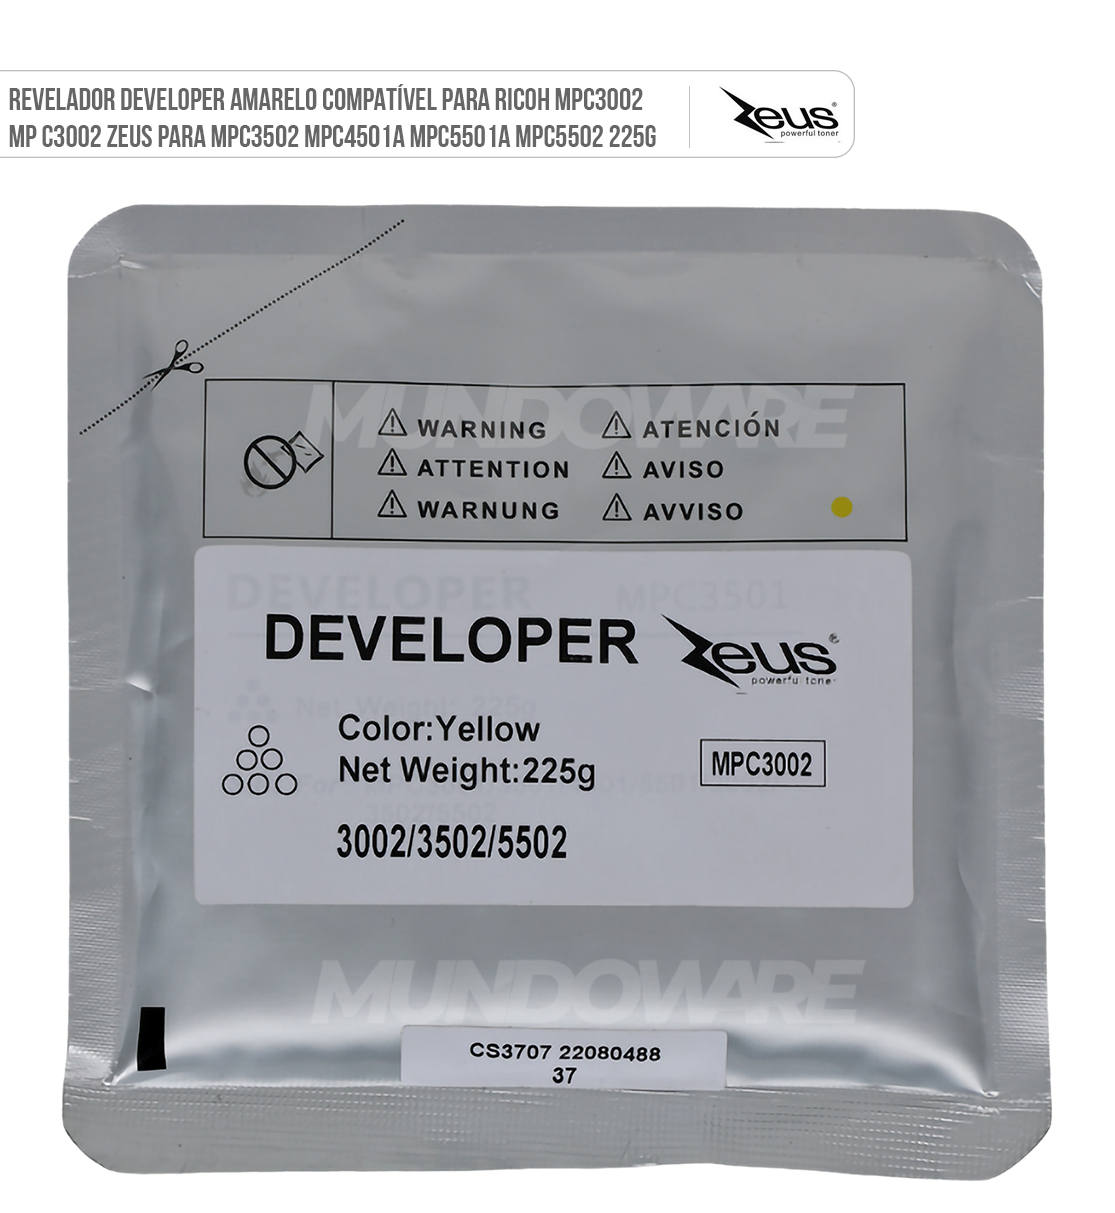 Revelador Developer Amarelo Compatível para Ricoh MPC3002 MP C3002 Zeus para MPC3502 MPC4501A MPC5501A MPC5502 225g